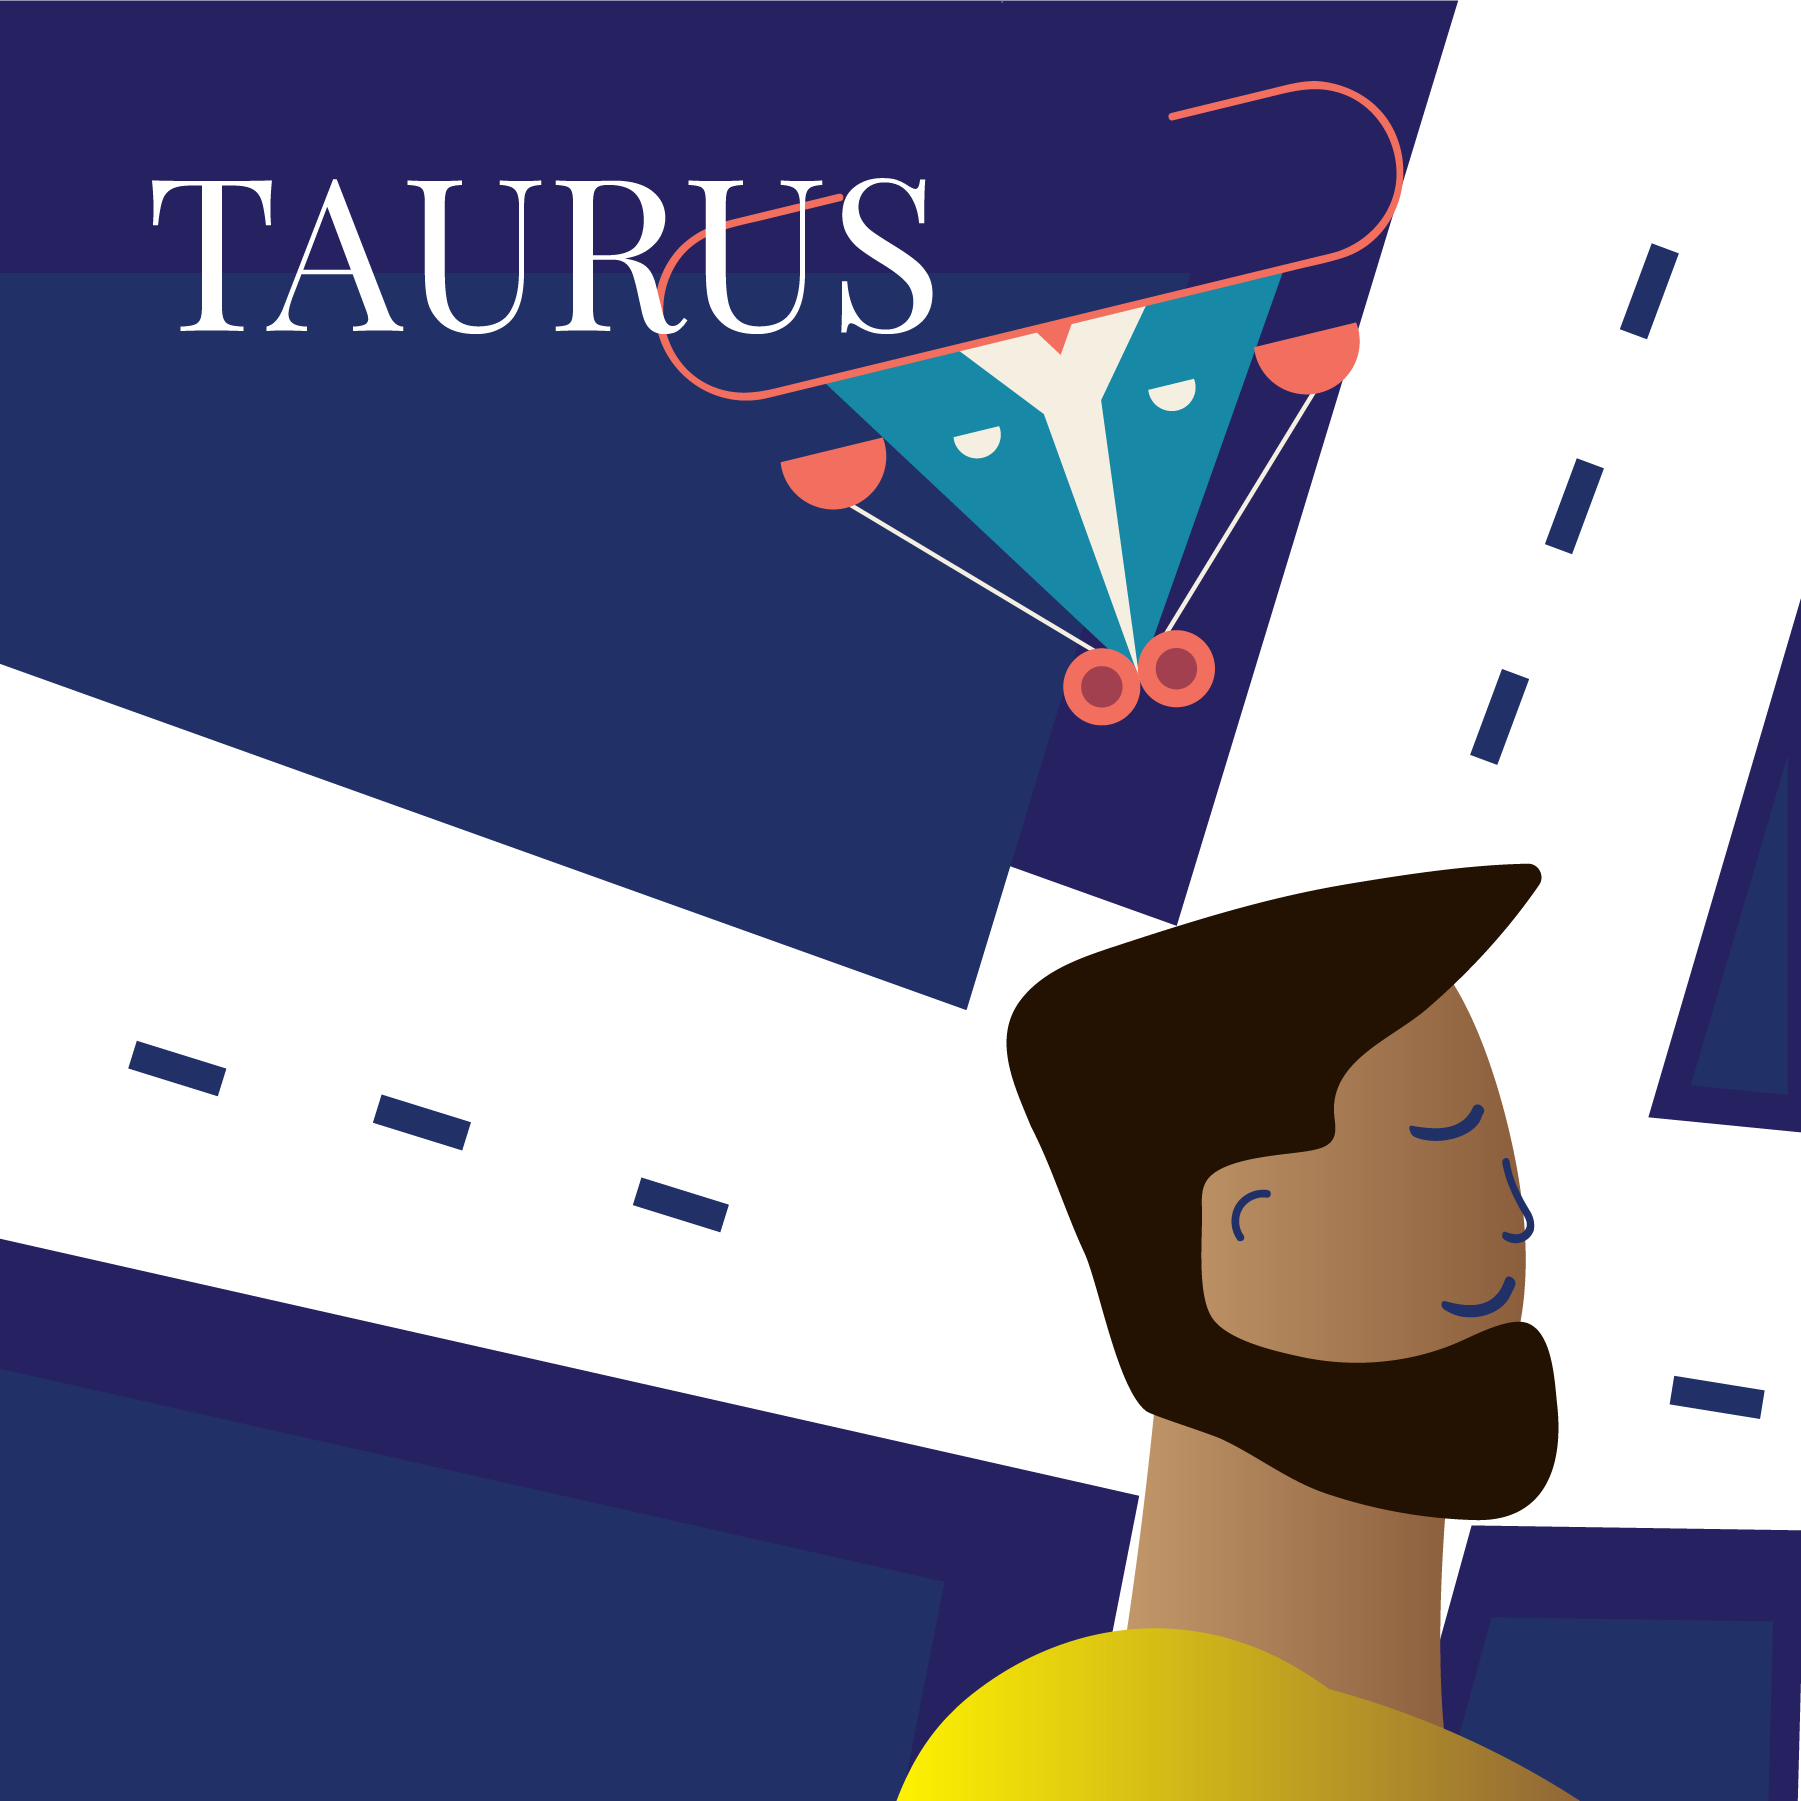 Taurus December 2021